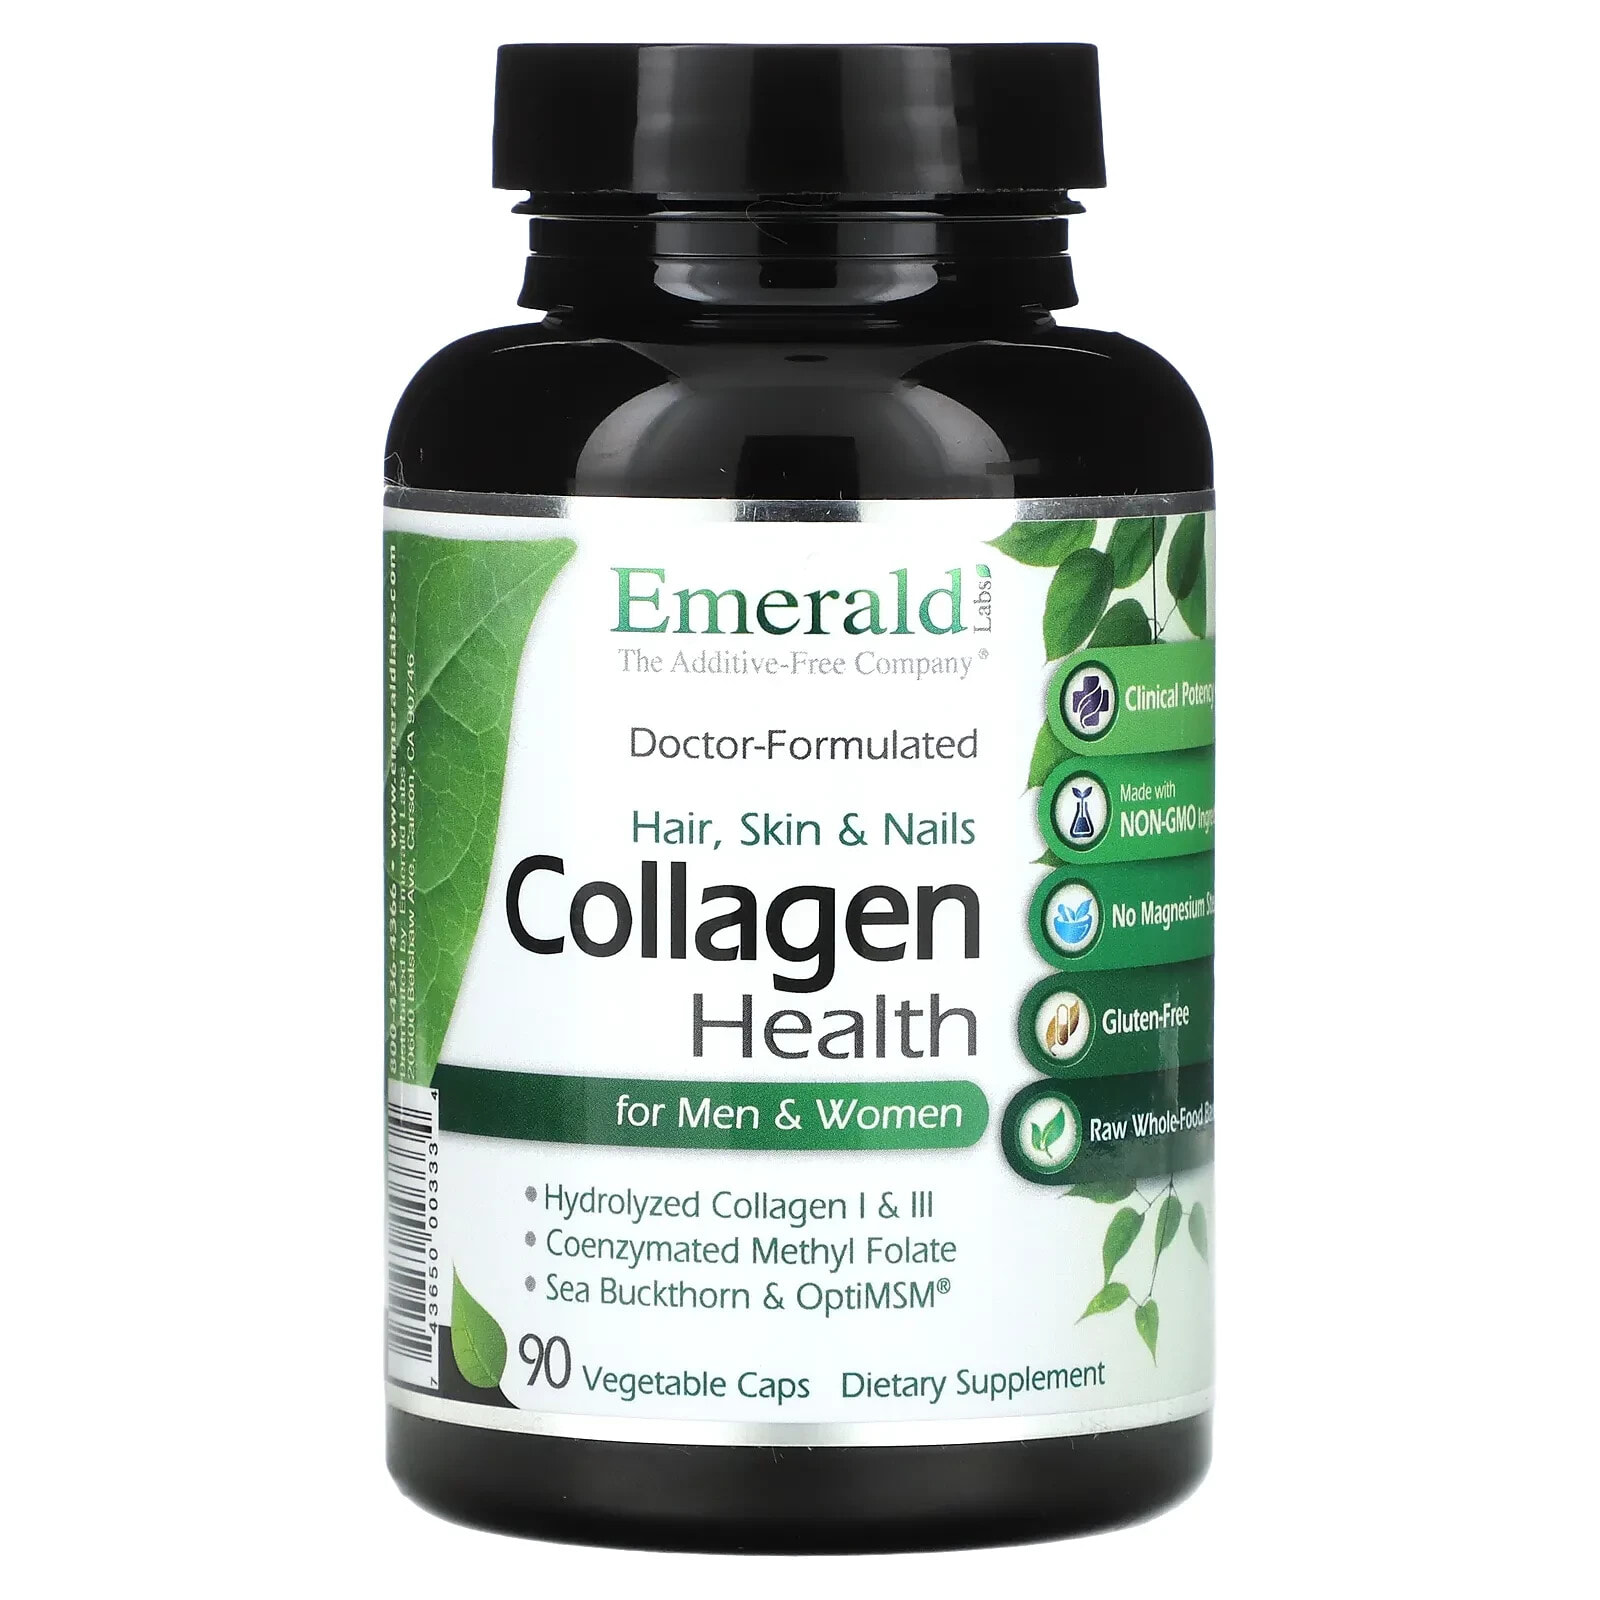 Collagen Health for Men & Women, 90 Vegetable Caps